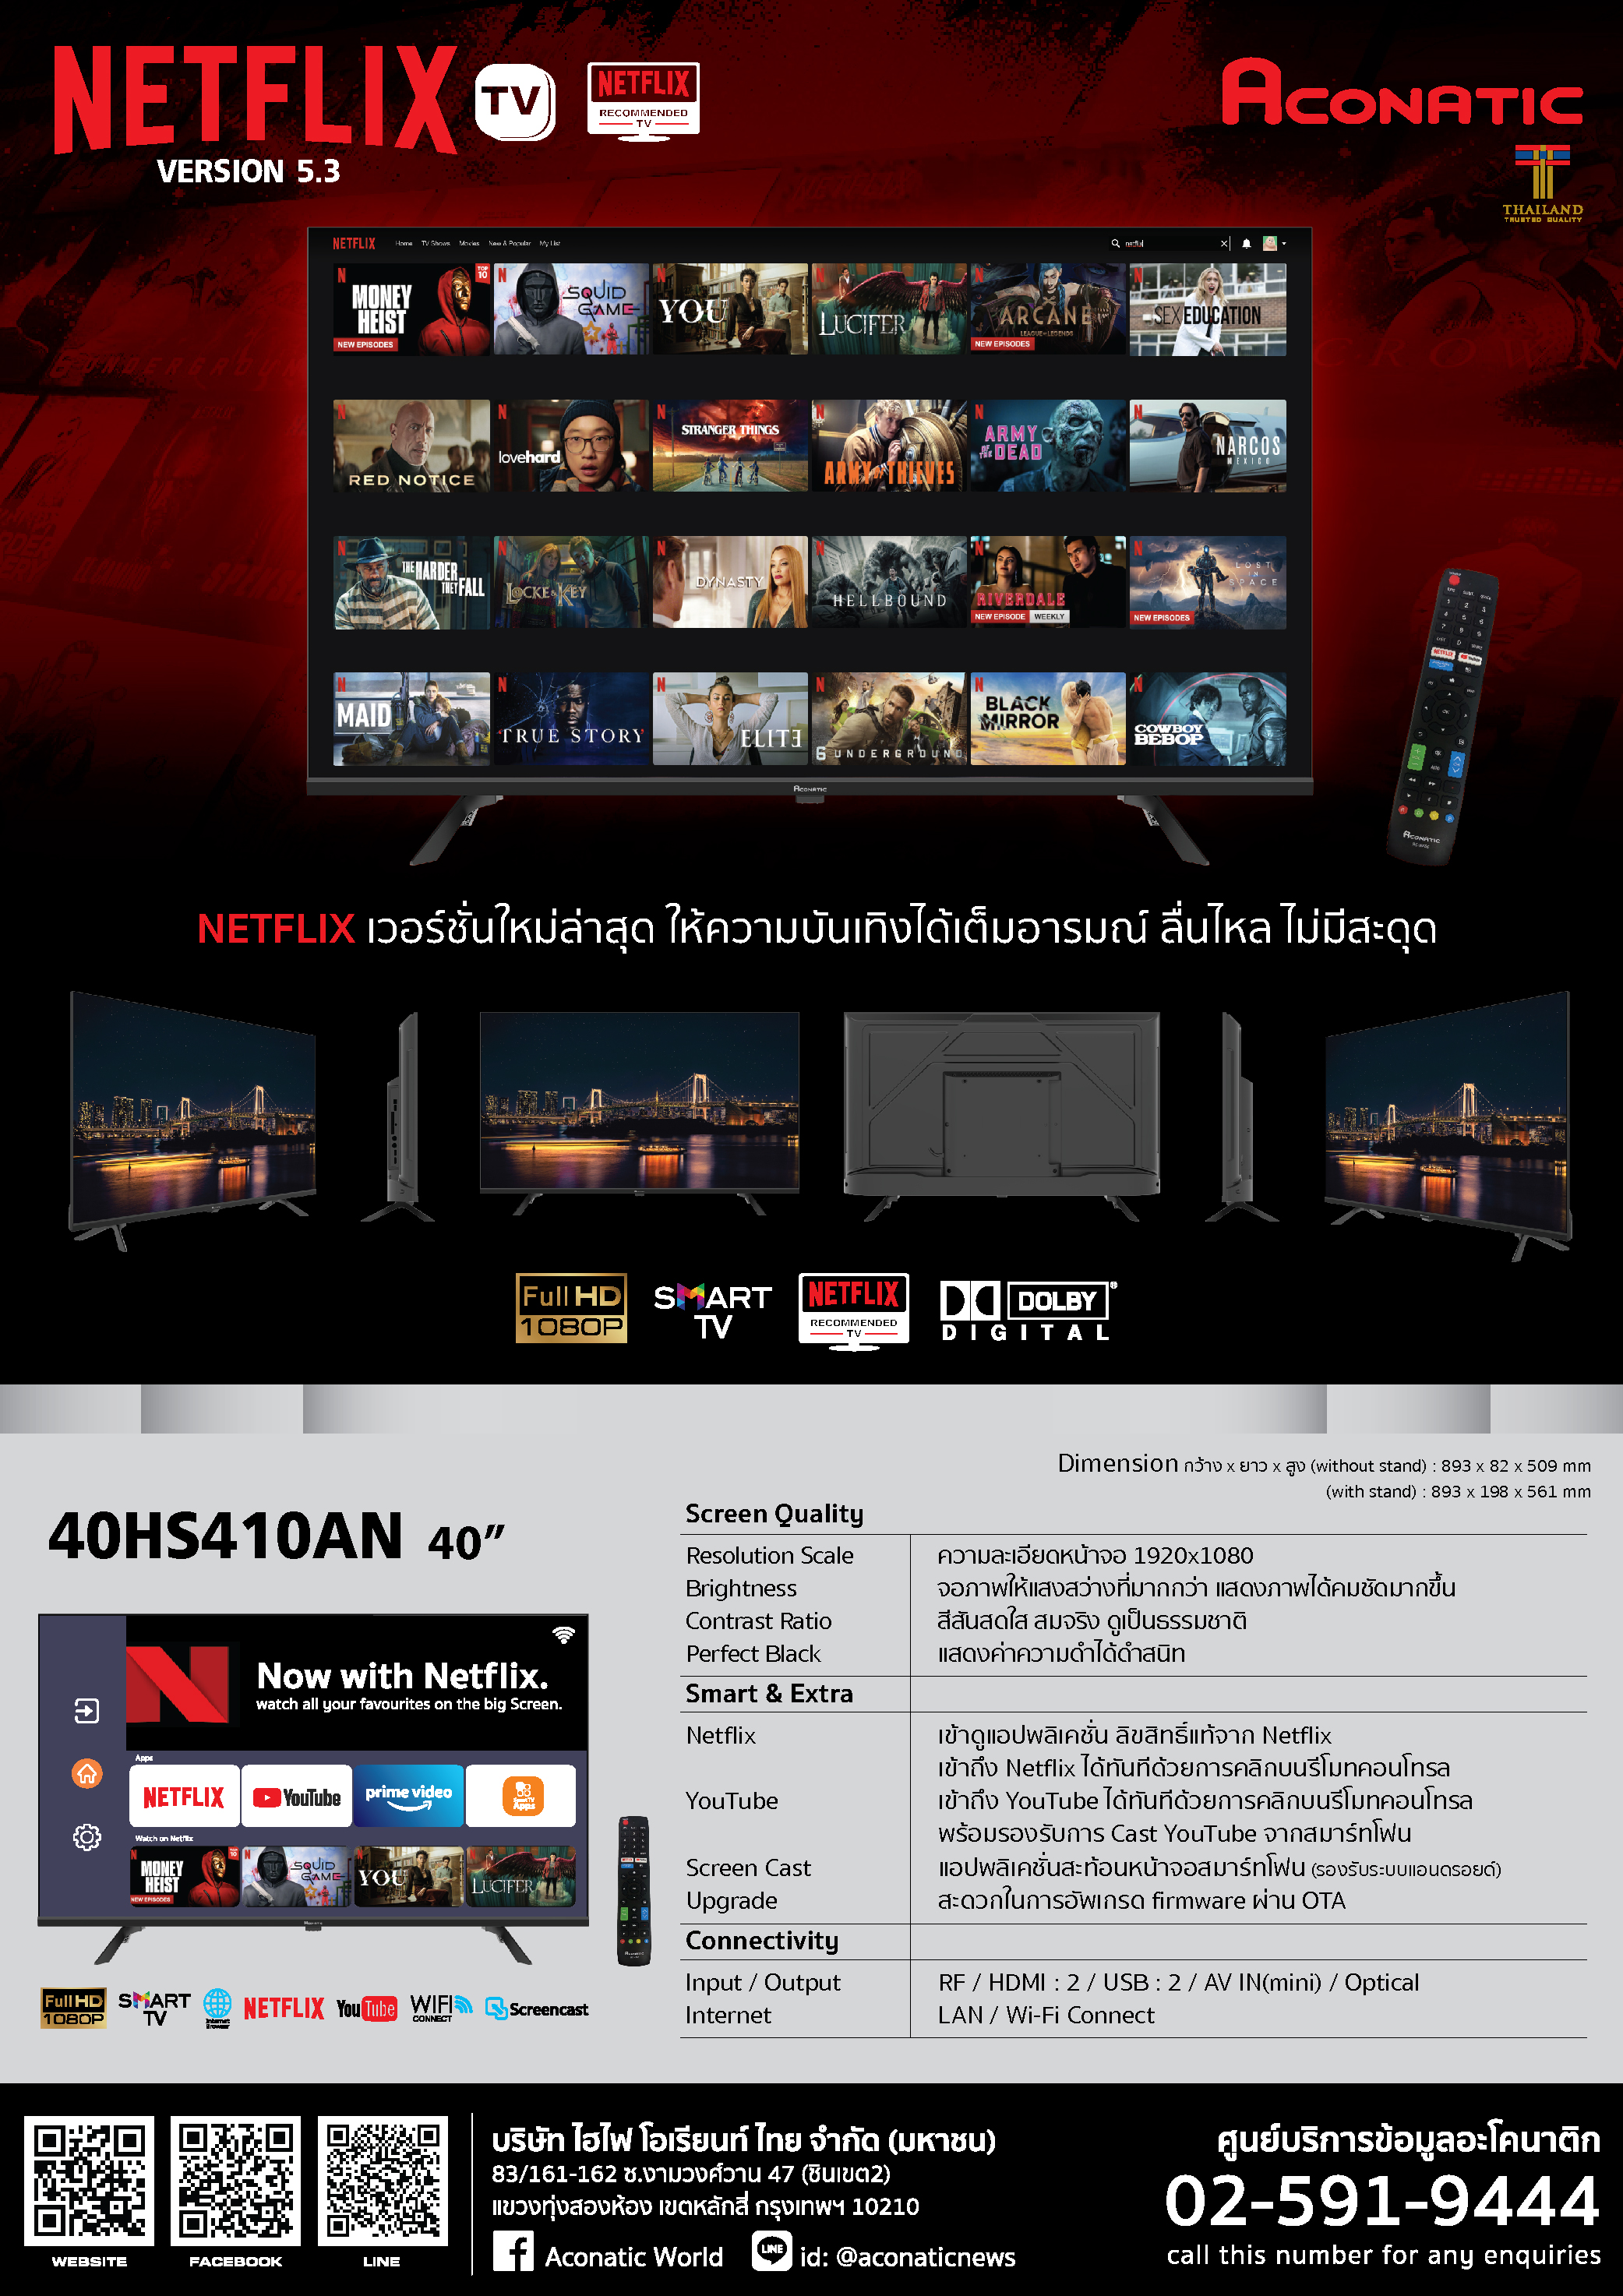 Netflix TV 40" model 40HS410AN